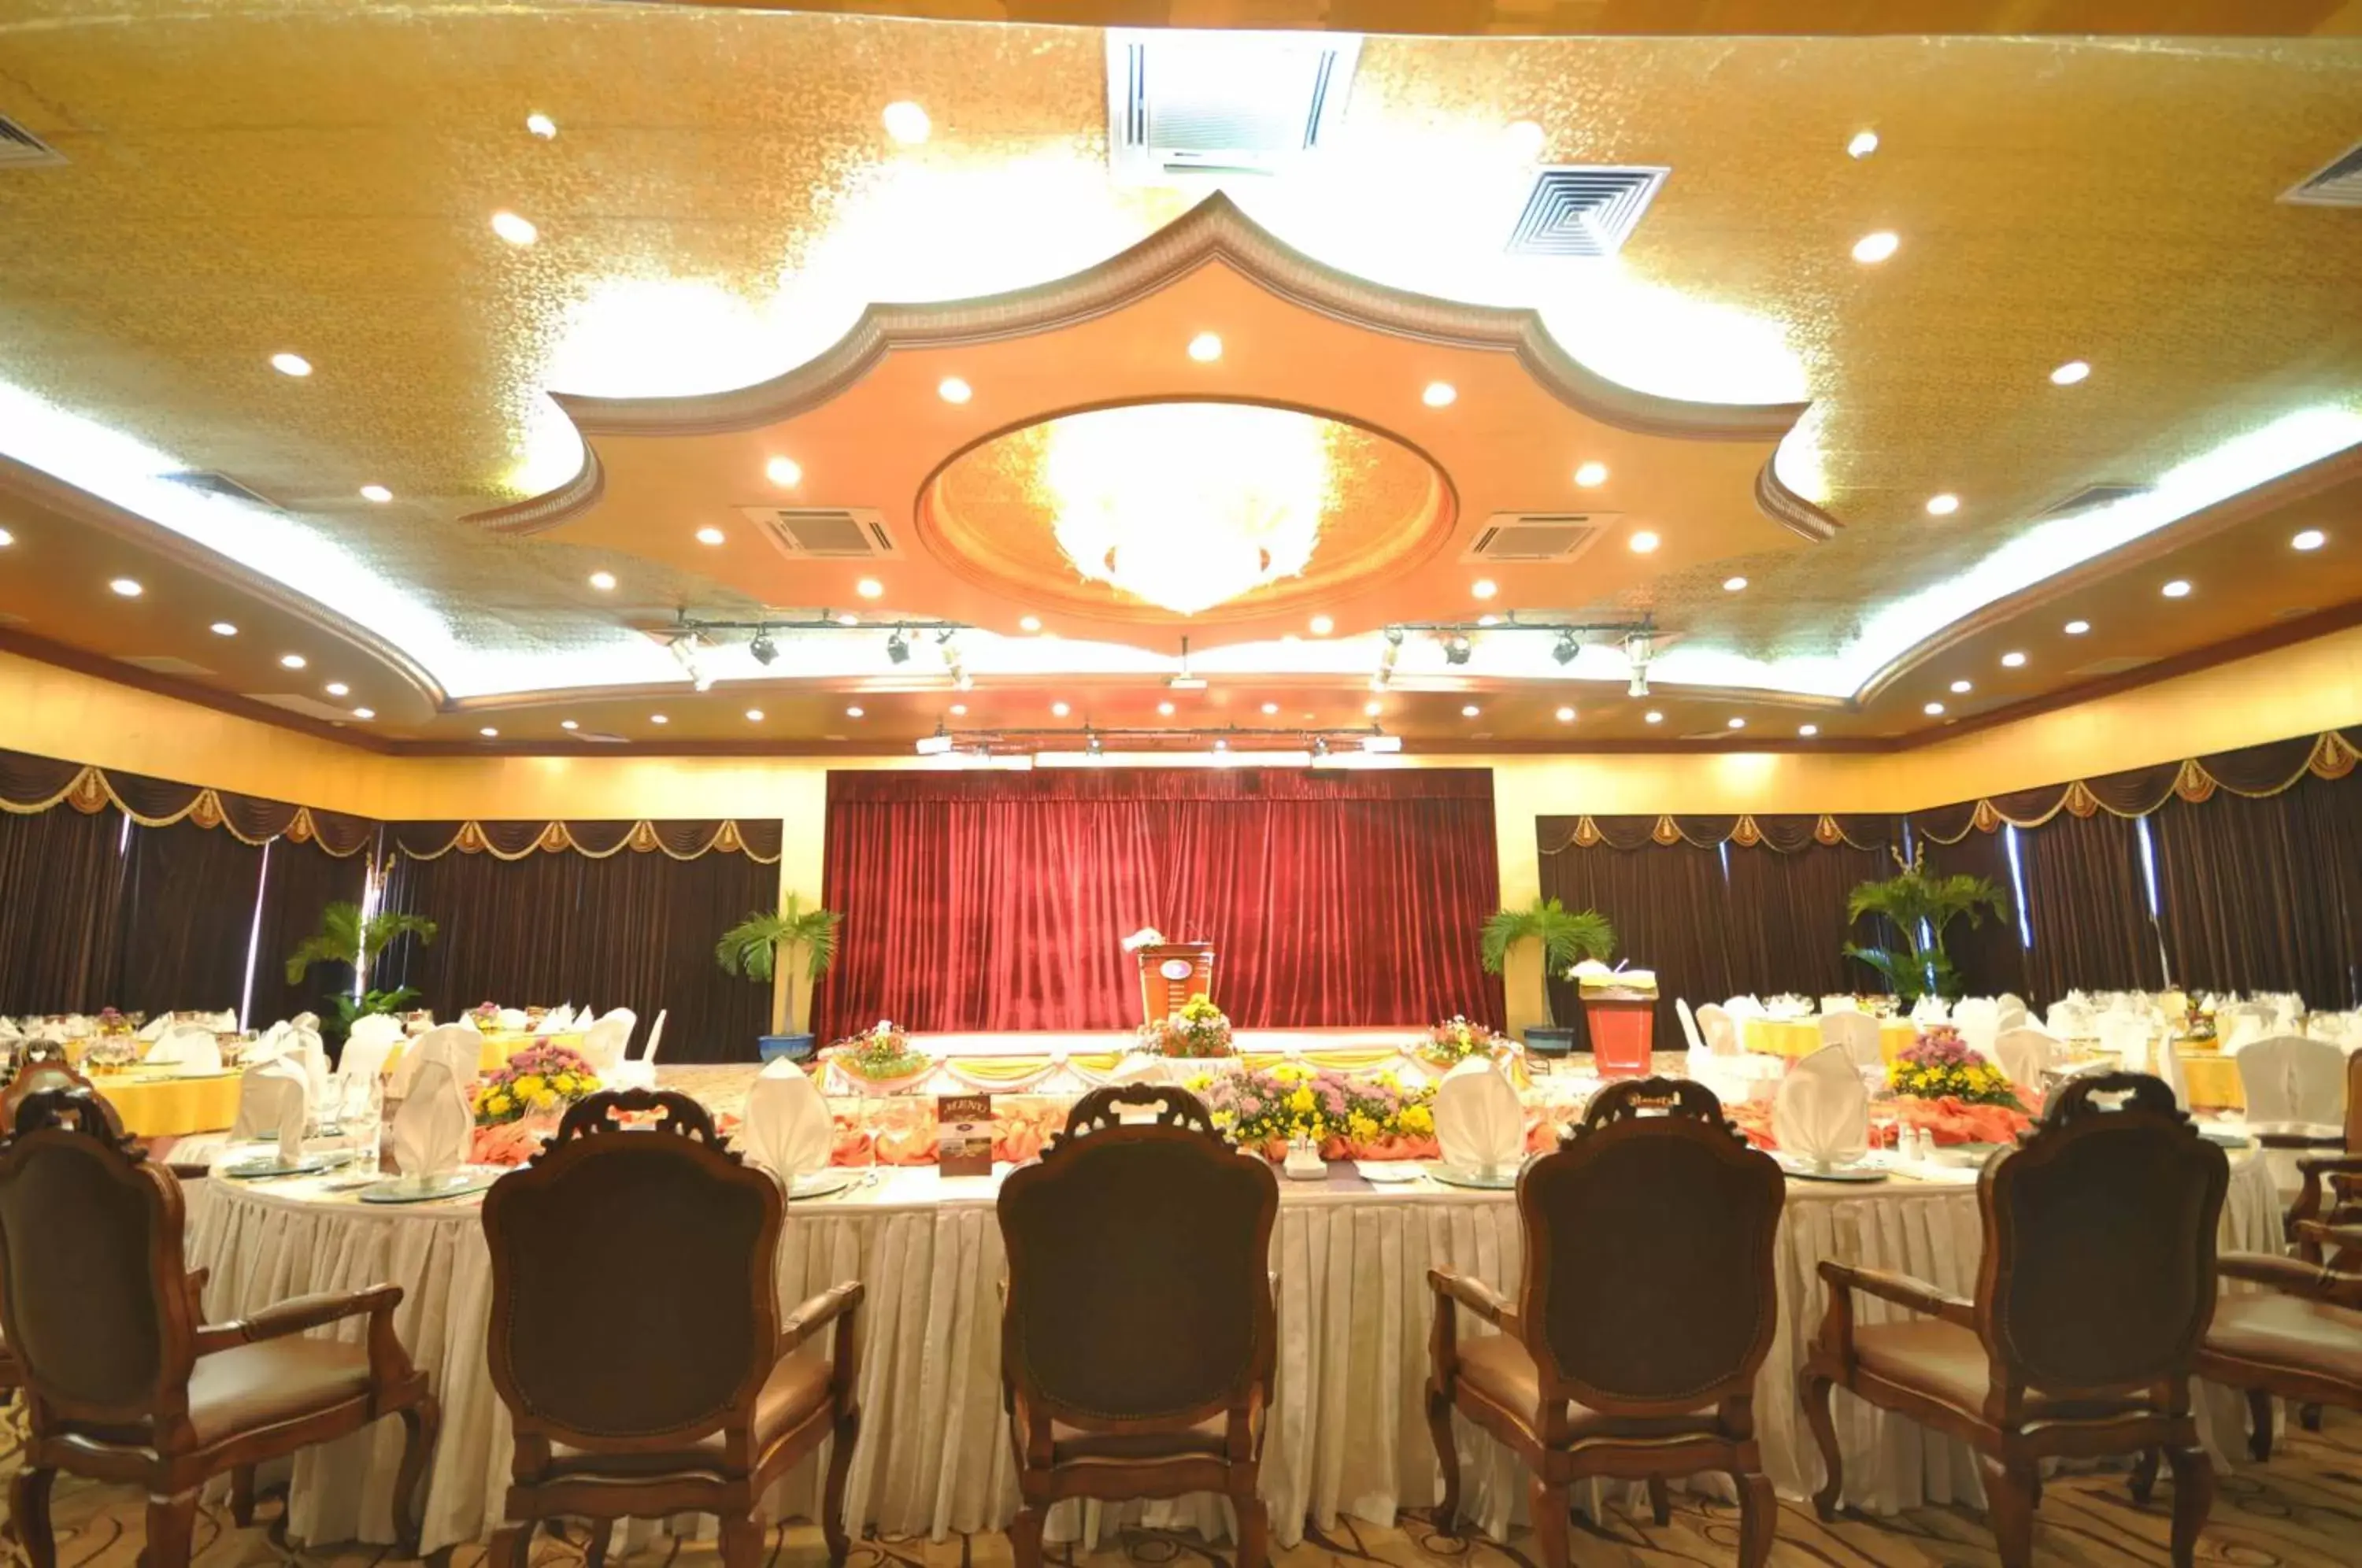 Banquet/Function facilities, Banquet Facilities in Phnom Penh Hotel